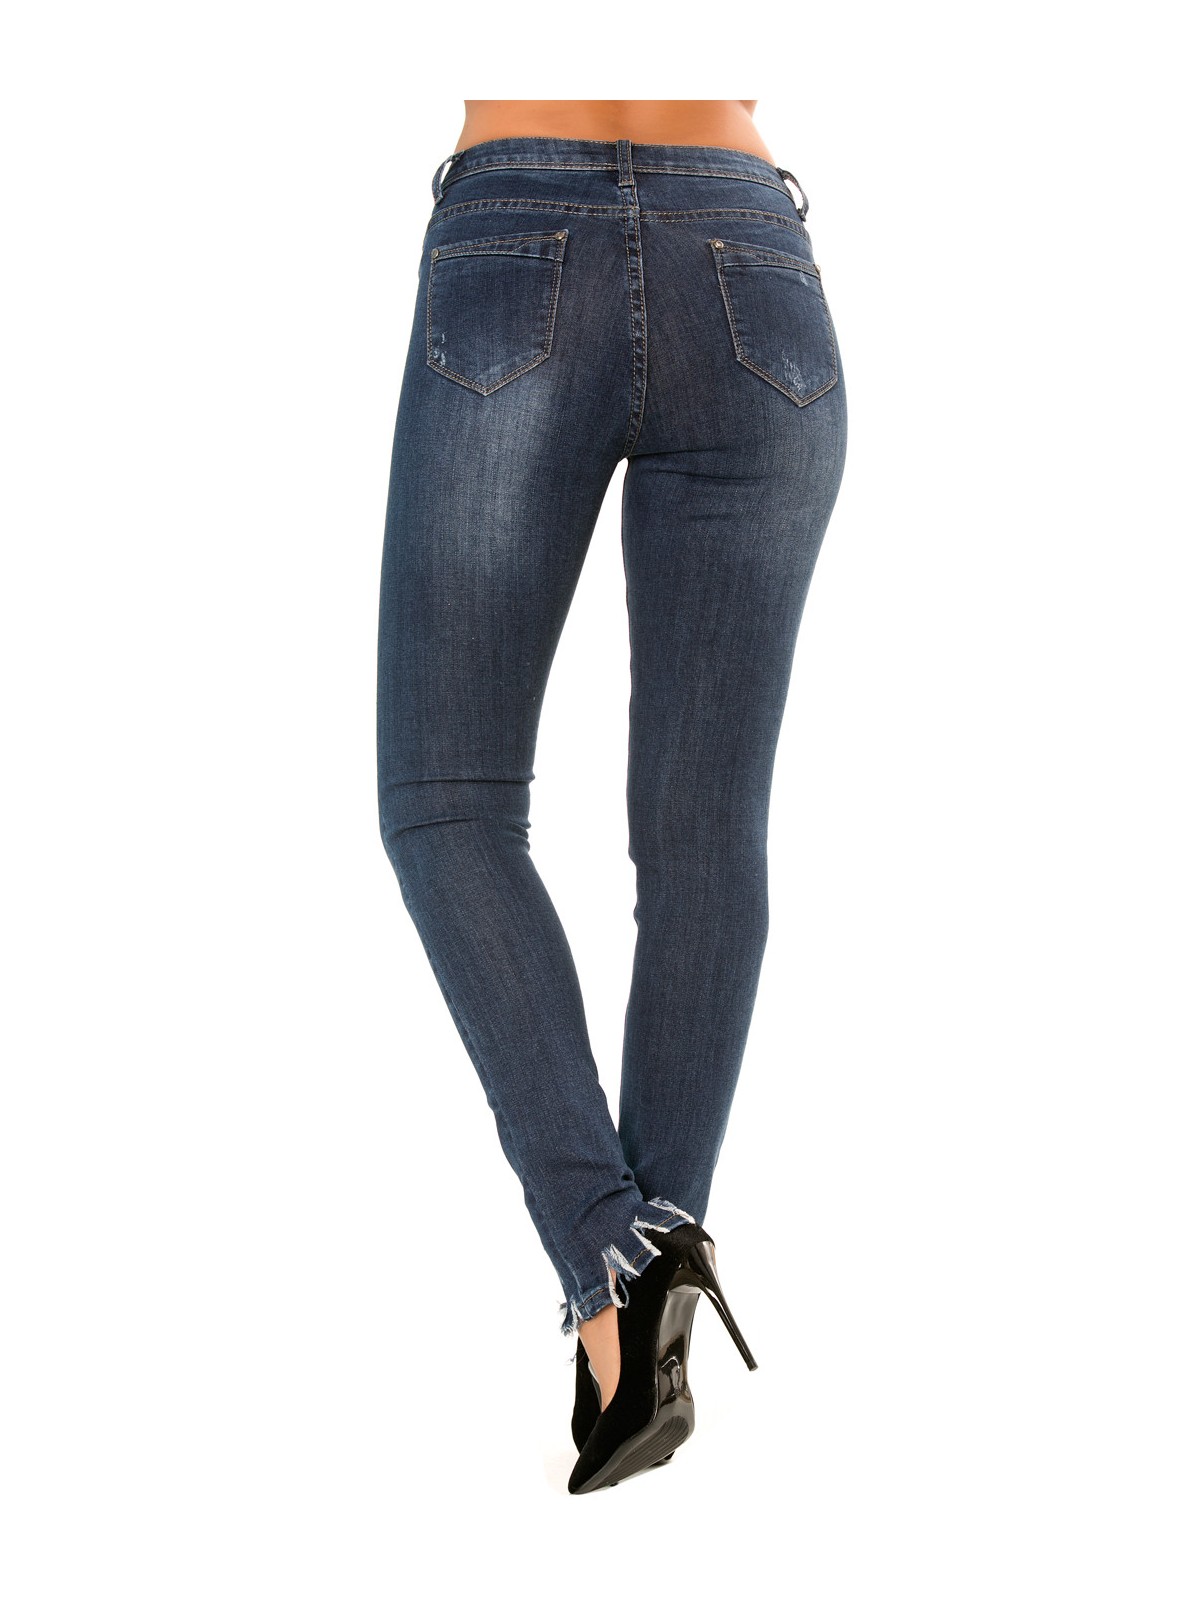 Pantalon jeans slim Bleu écorché sur le bas. PTL-S2607 - 9